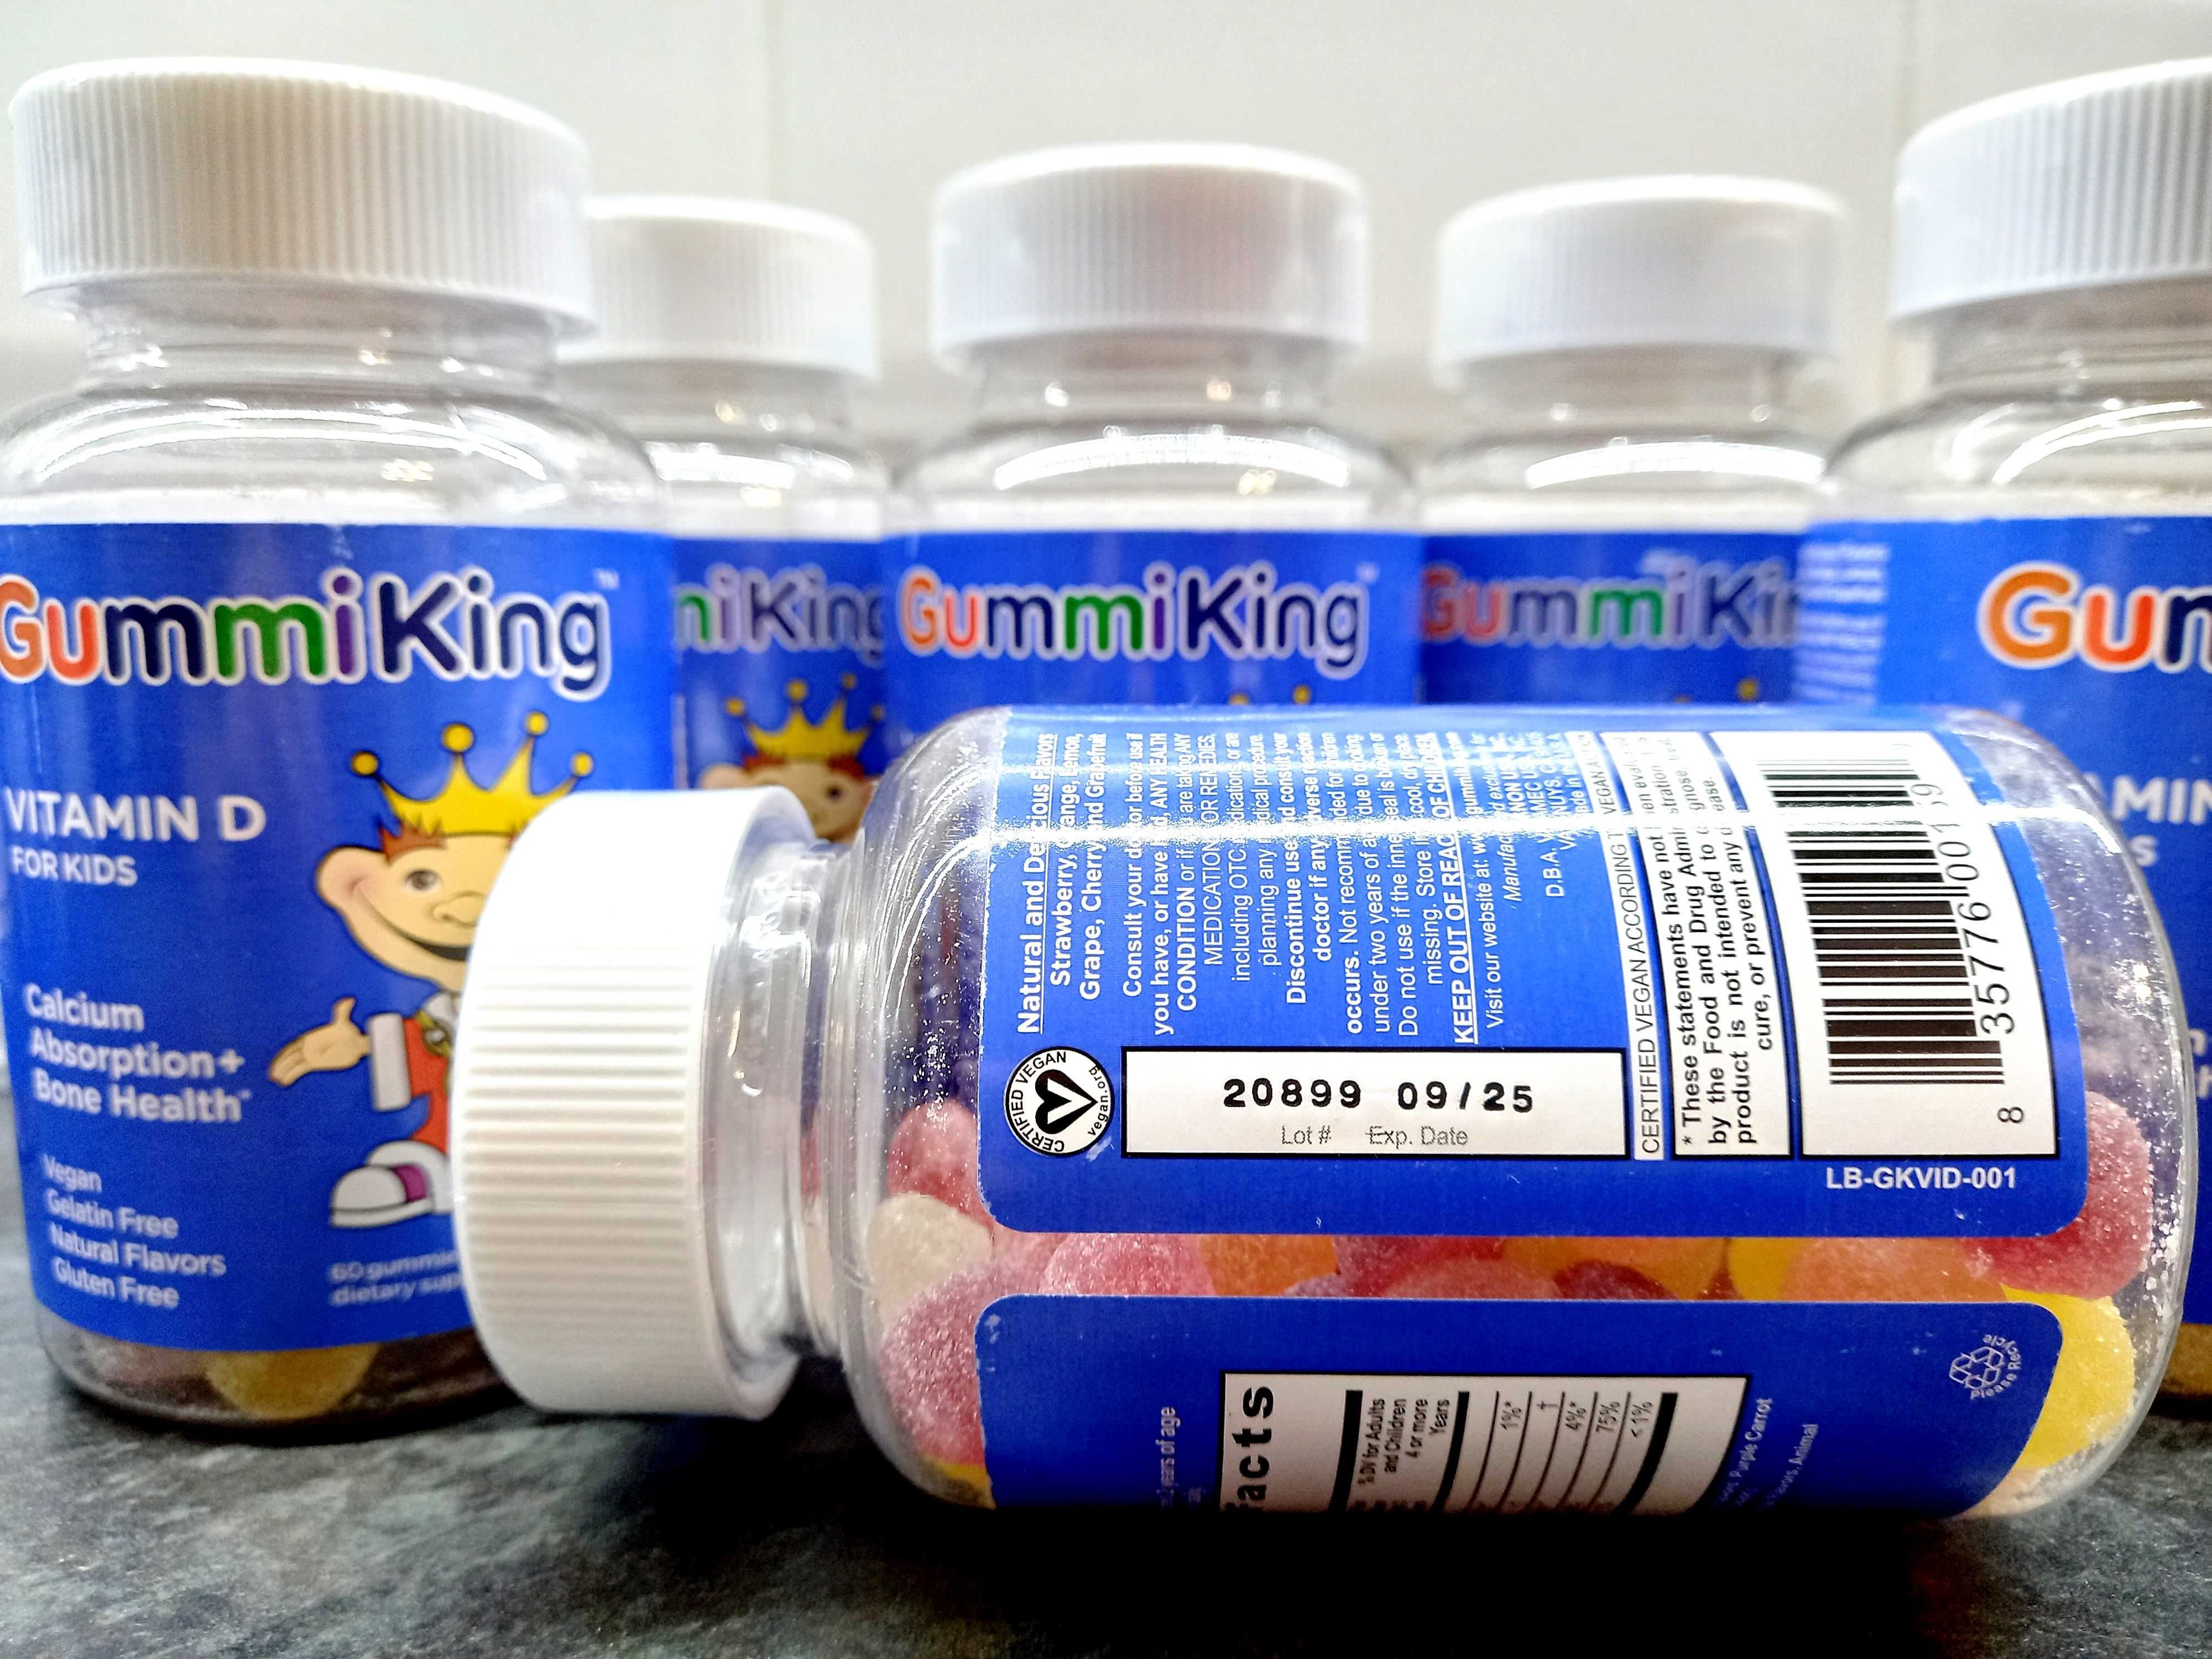 GummiKing, Vitamin D for Kids (60 жев.таб.), витамин D для детей